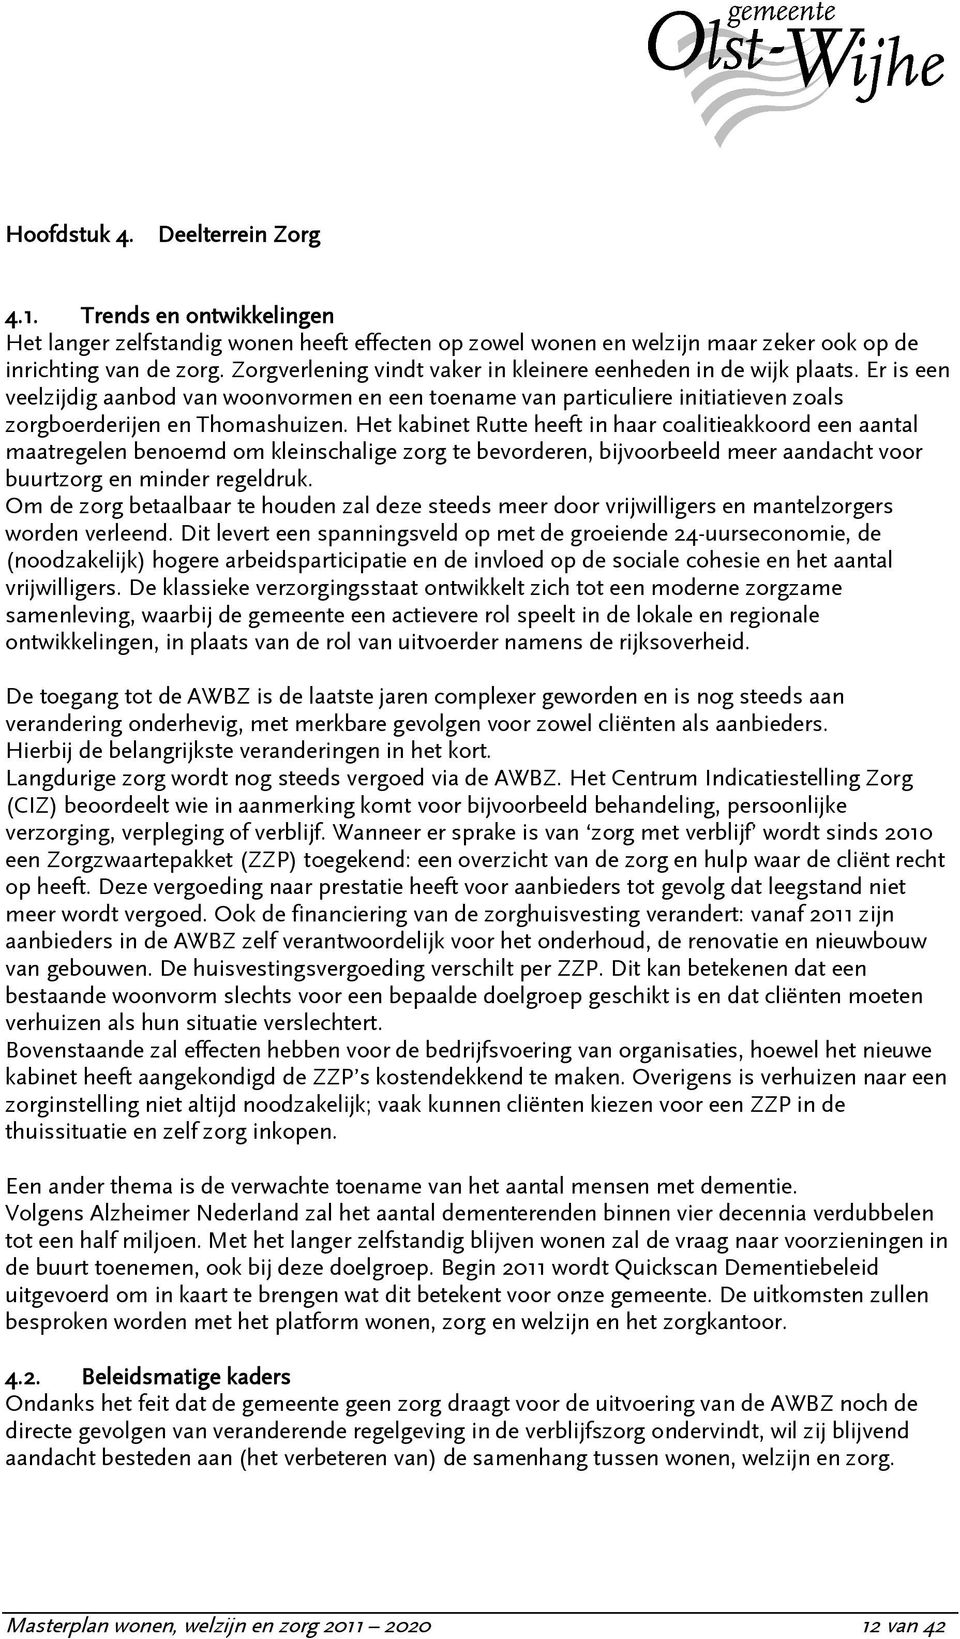 Het kabinet Rutte heeft in haar coalitieakkoord een aantal maatregelen benoemd om kleinschalige zorg te bevorderen, bijvoorbeeld meer aandacht voor buurtzorg en minder regeldruk.